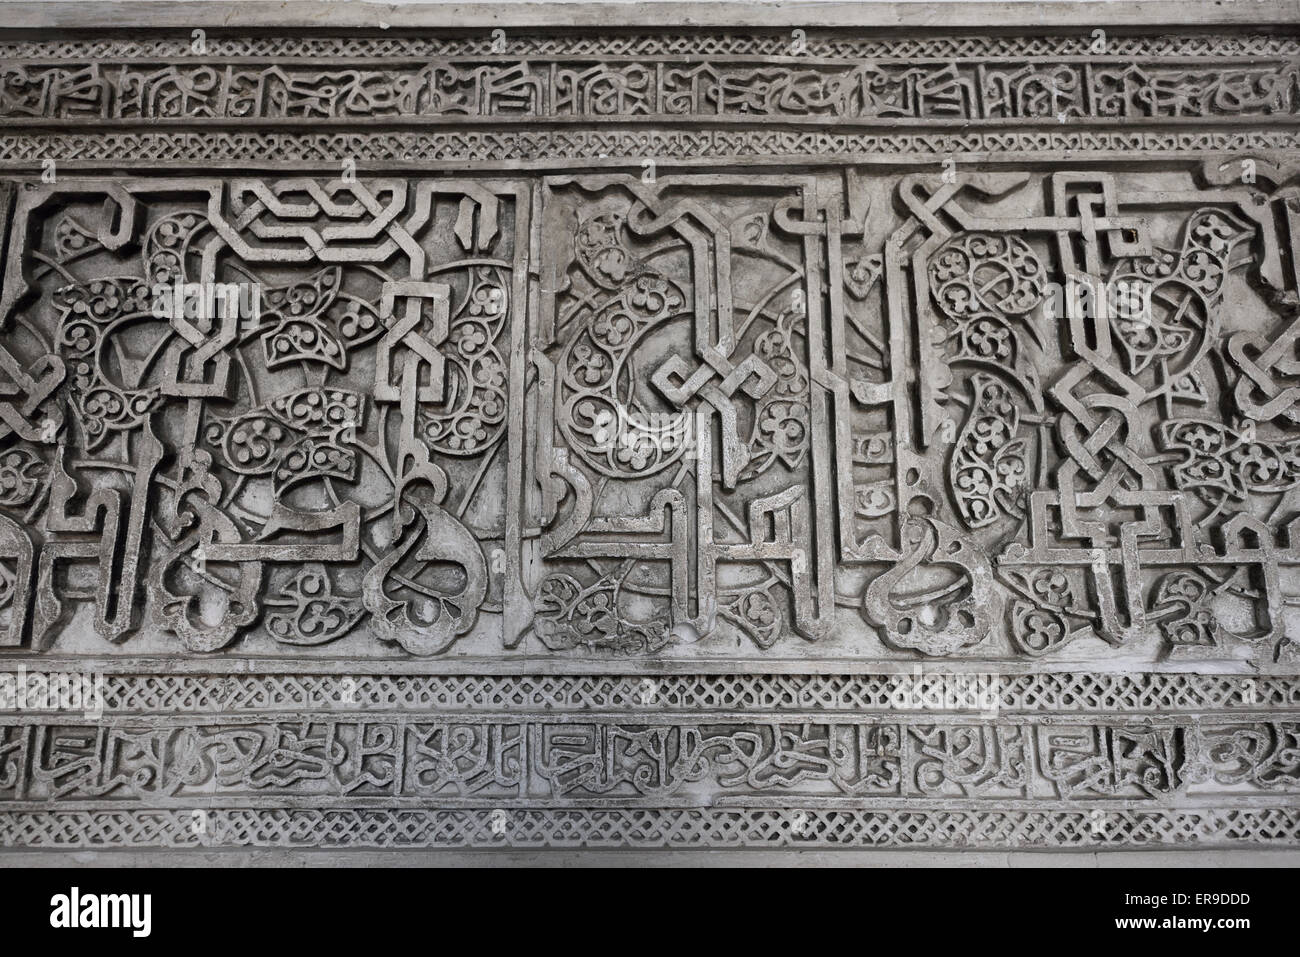 Chiudere i dettagli del muro arabo carving al palazzo di Alcazar Siviglia Andalusia Foto Stock